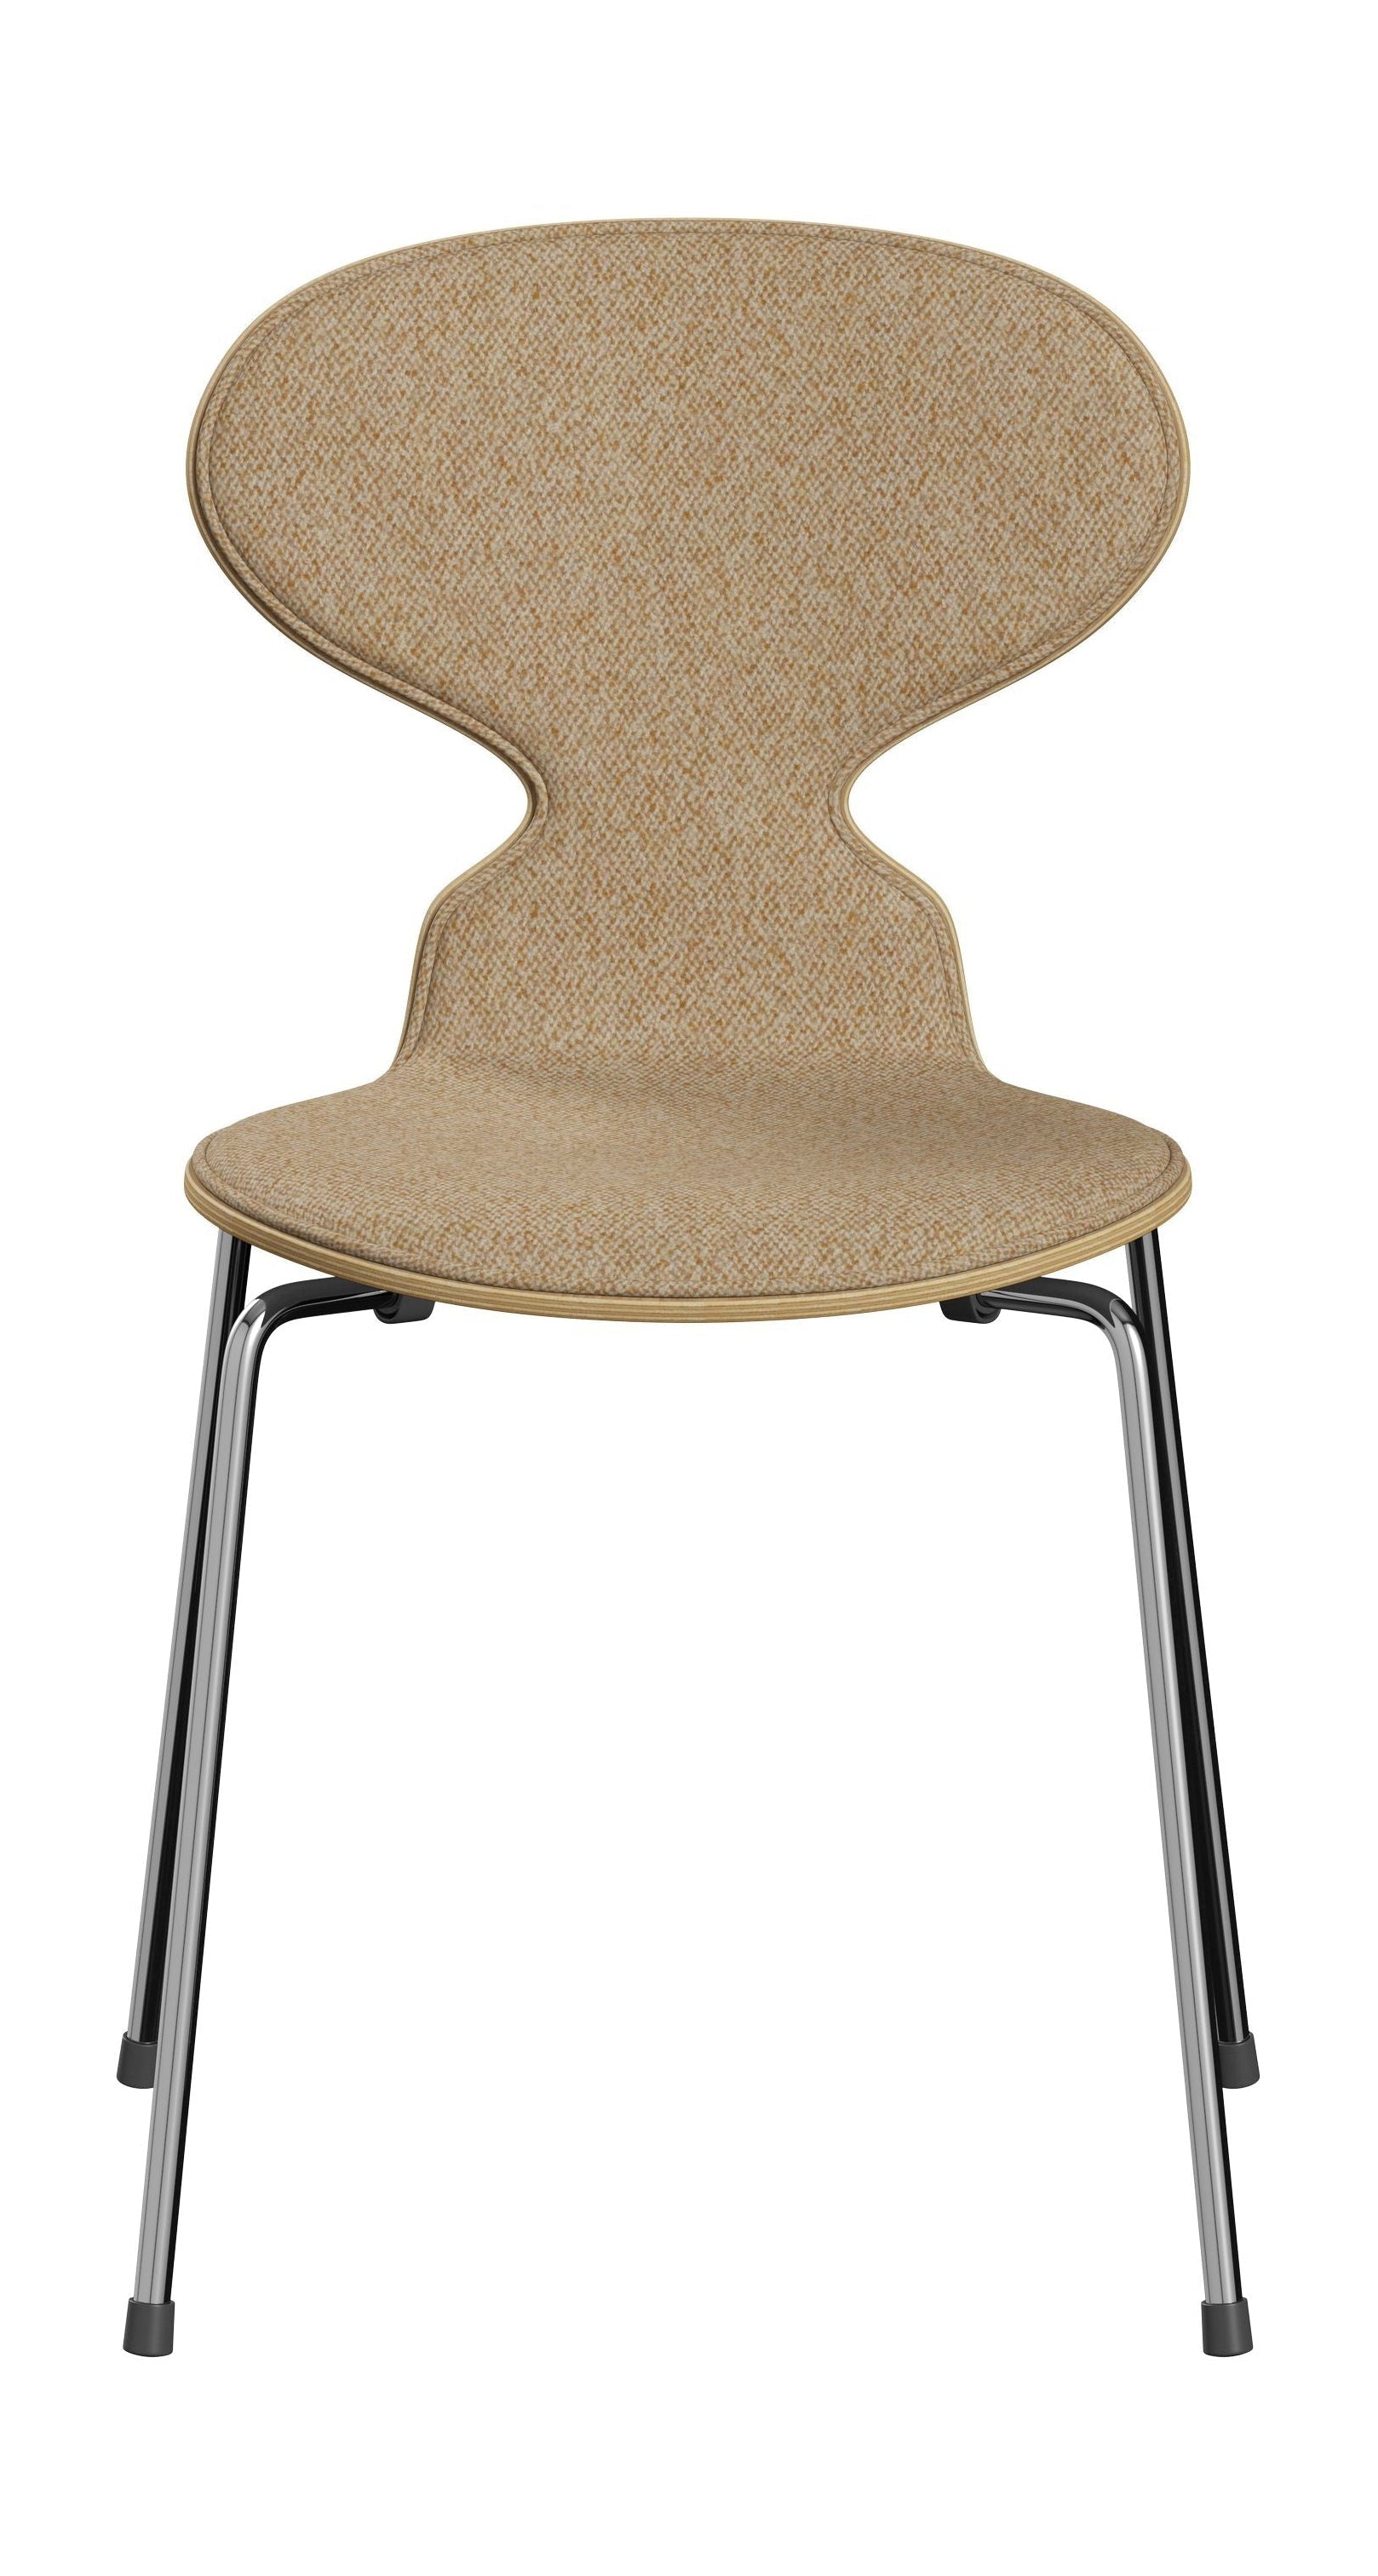 Fritz Hansen 3101 Ant stol foran polstret, skal: Ryd lakeret finer Eiche, polstring: Vanir Textile Beige sennep, Base: Stål/krom